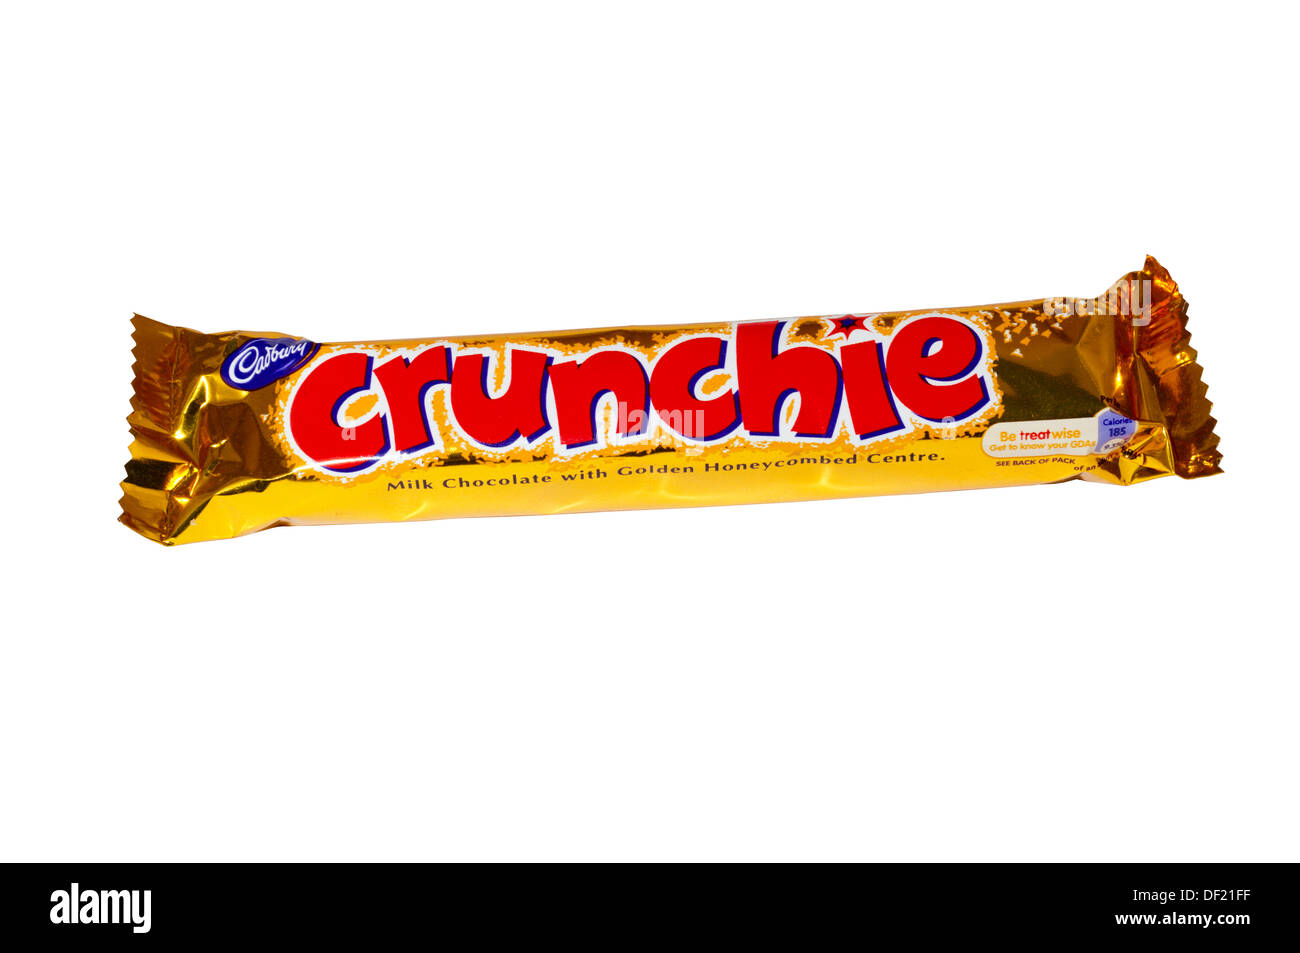 Cadbury's Crunchie bar. Stock Photo